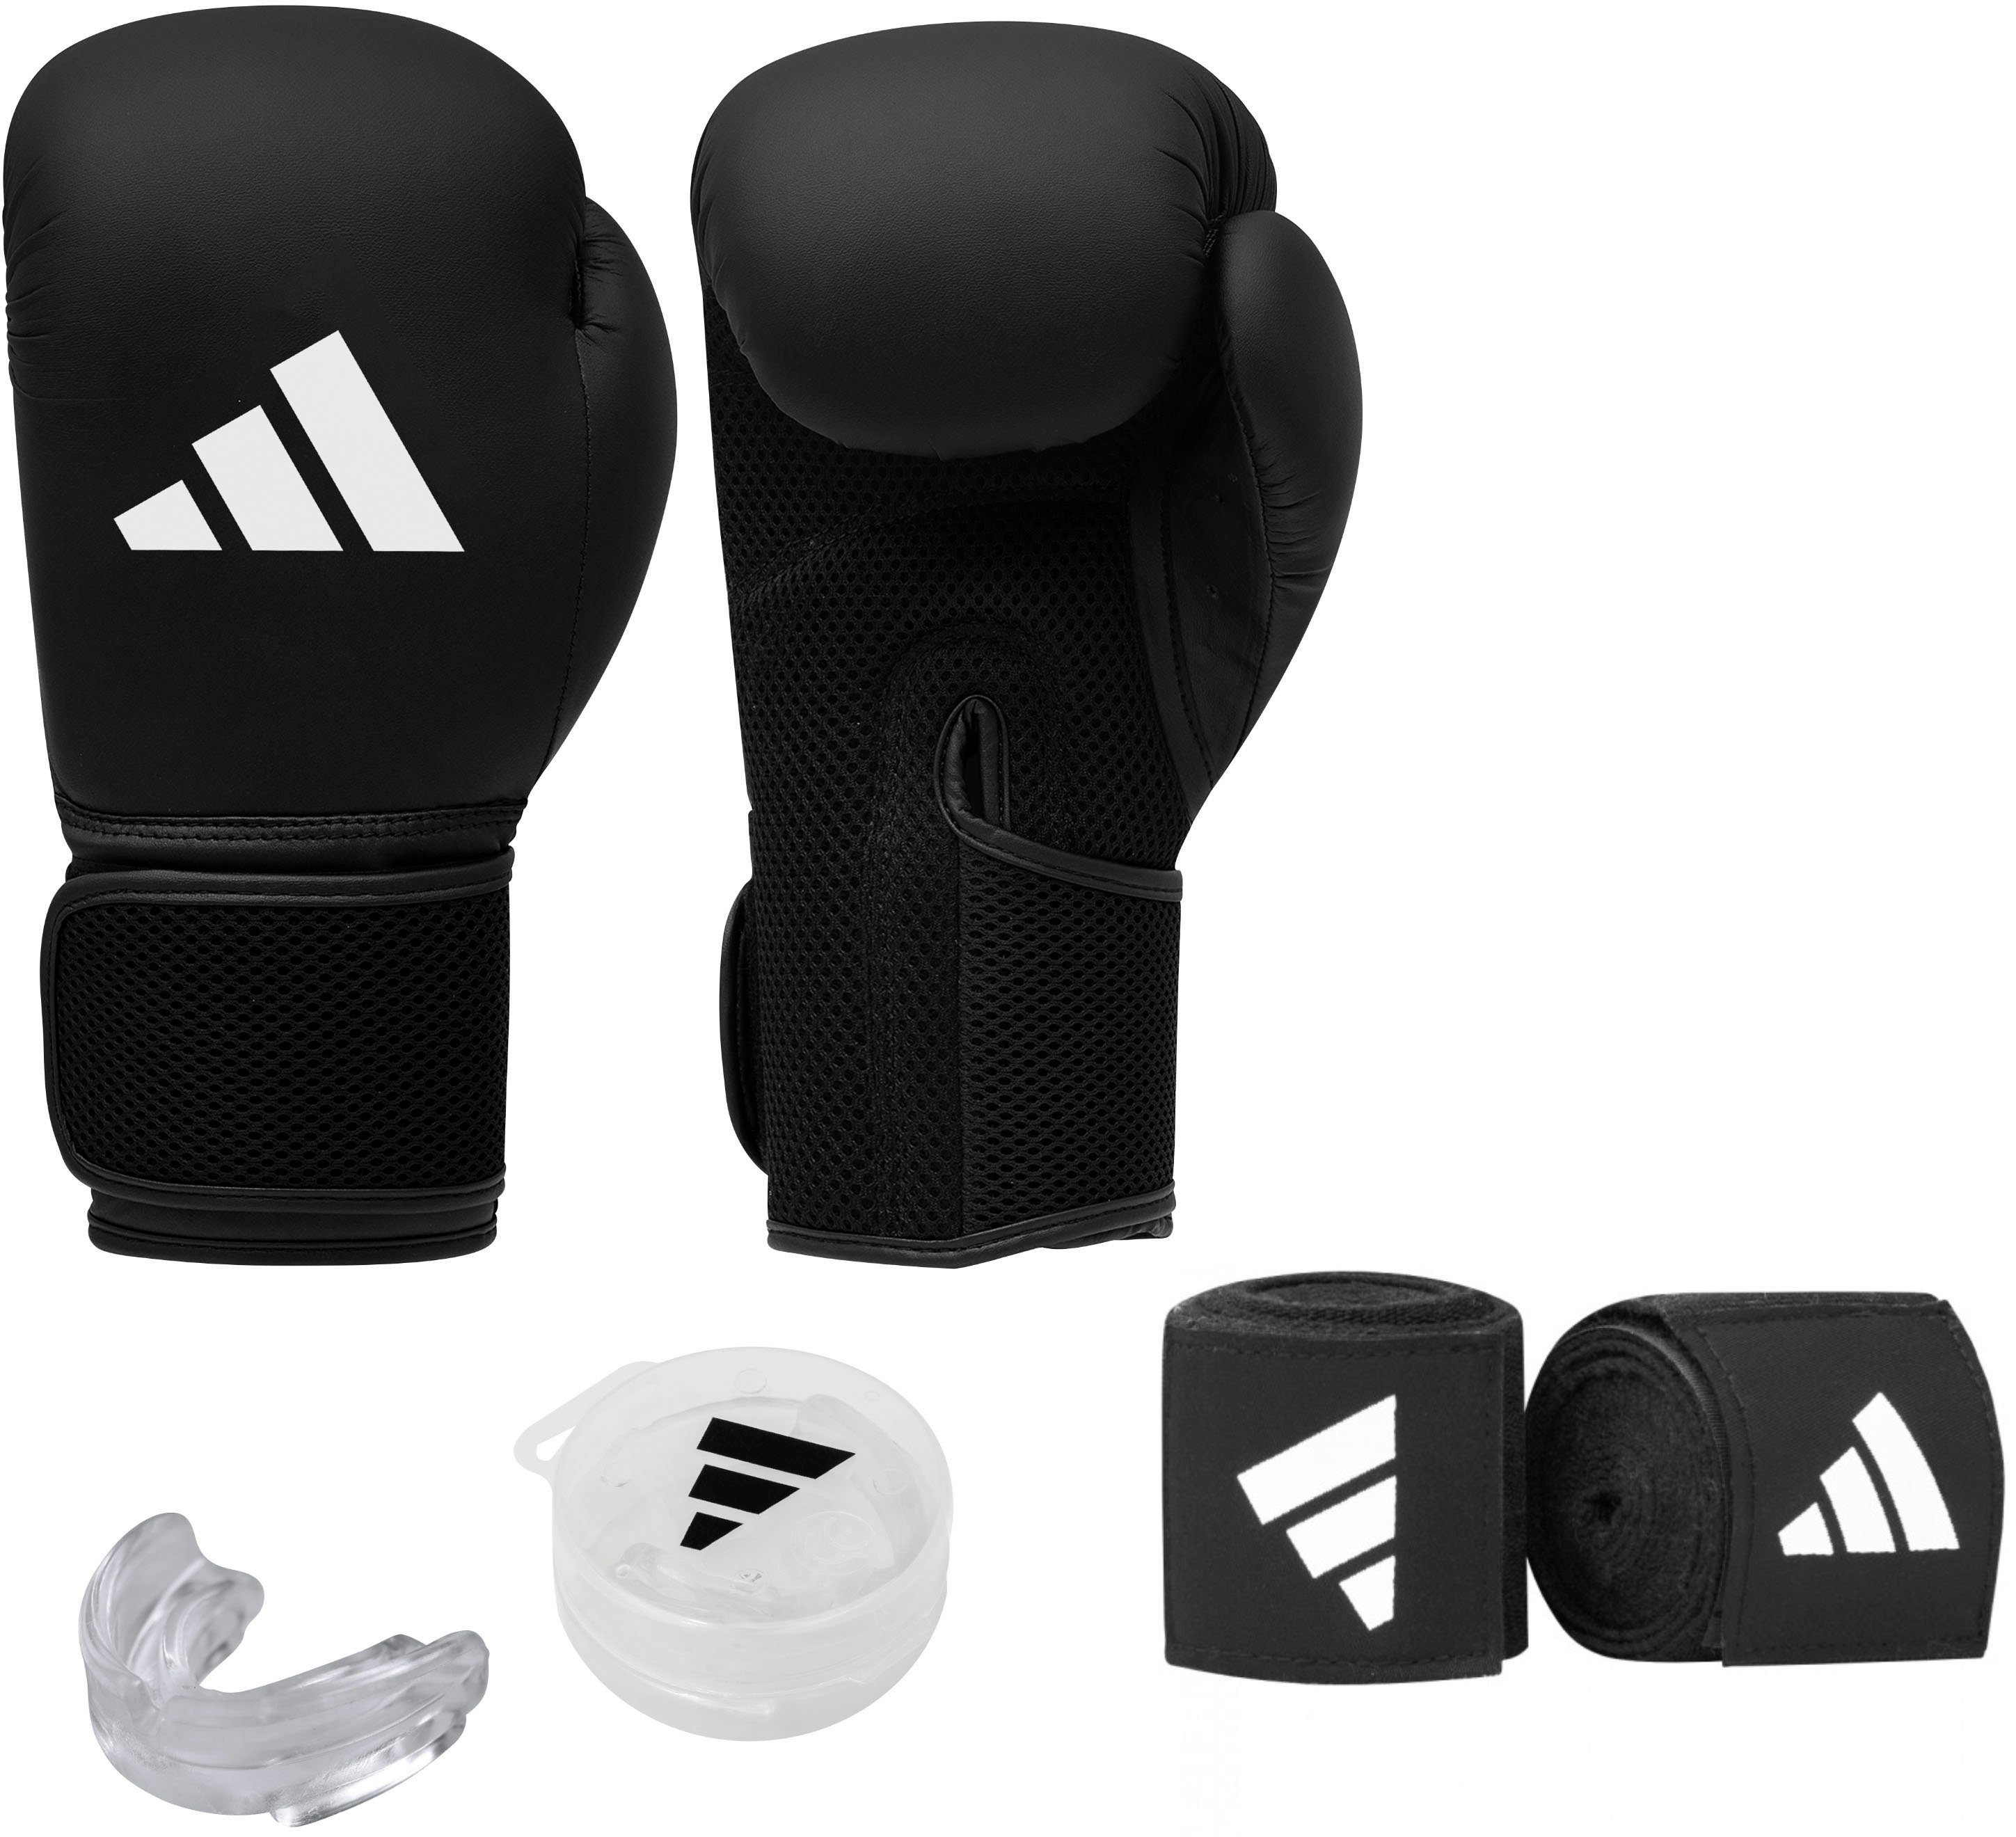 Übersee-Parallelimport von Originalprodukten adidas Performance Boxhandschuhe Boxing Set Men